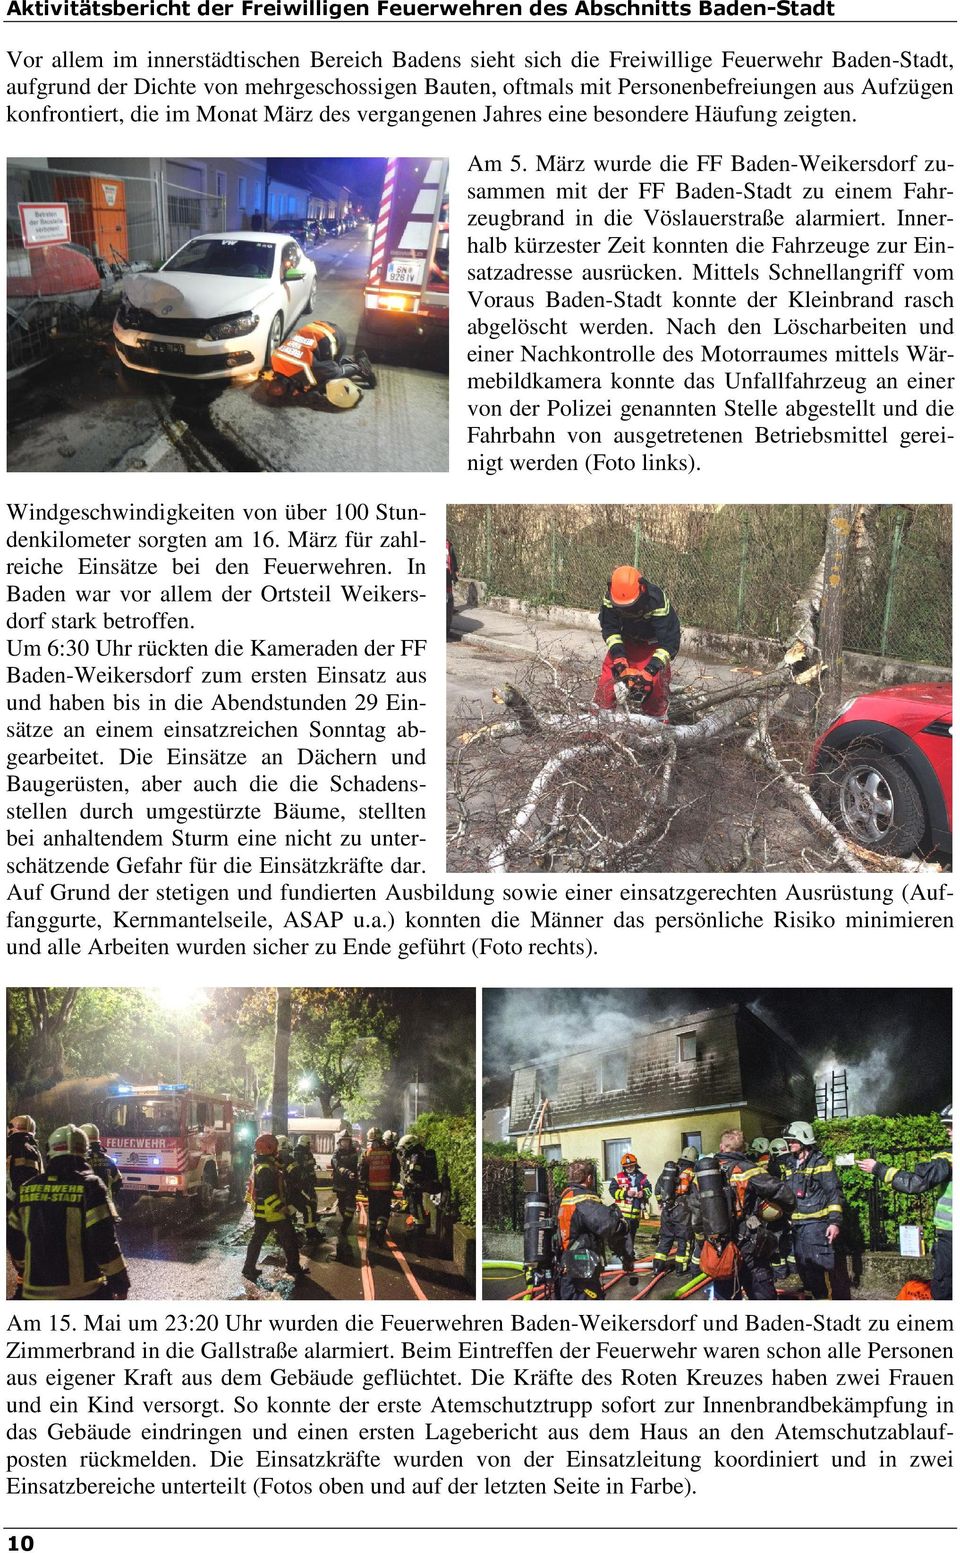 März wurde die FF Baden-Weikersdorf zusammen mit der FF Baden-Stadt zu einem Fahrzeugbrand in die Vöslauerstraße alarmiert. Innerhalb kürzester Zeit konnten die Fahrzeuge zur Einsatzadresse ausrücken.